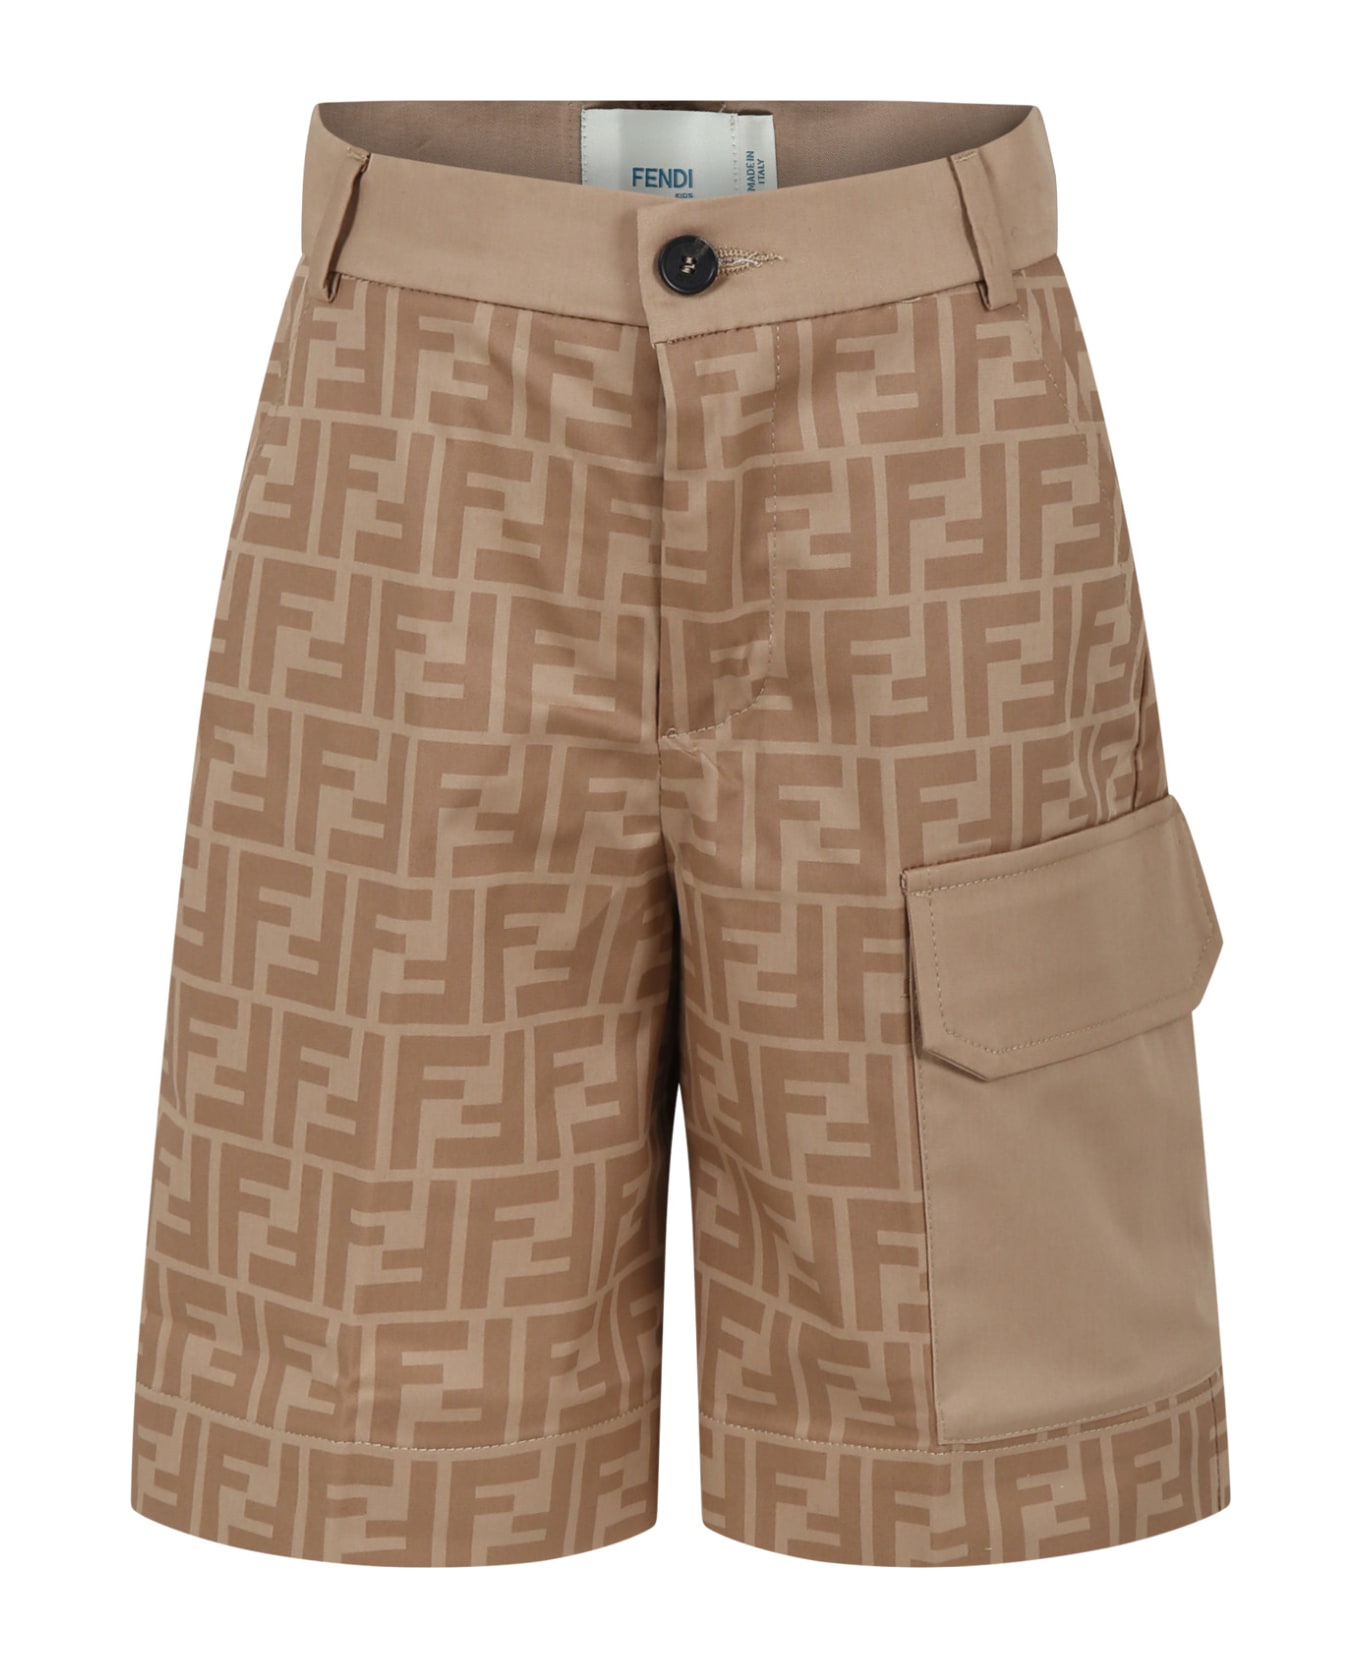 Fendi Beige Shorts For Boy With Ff - Beige